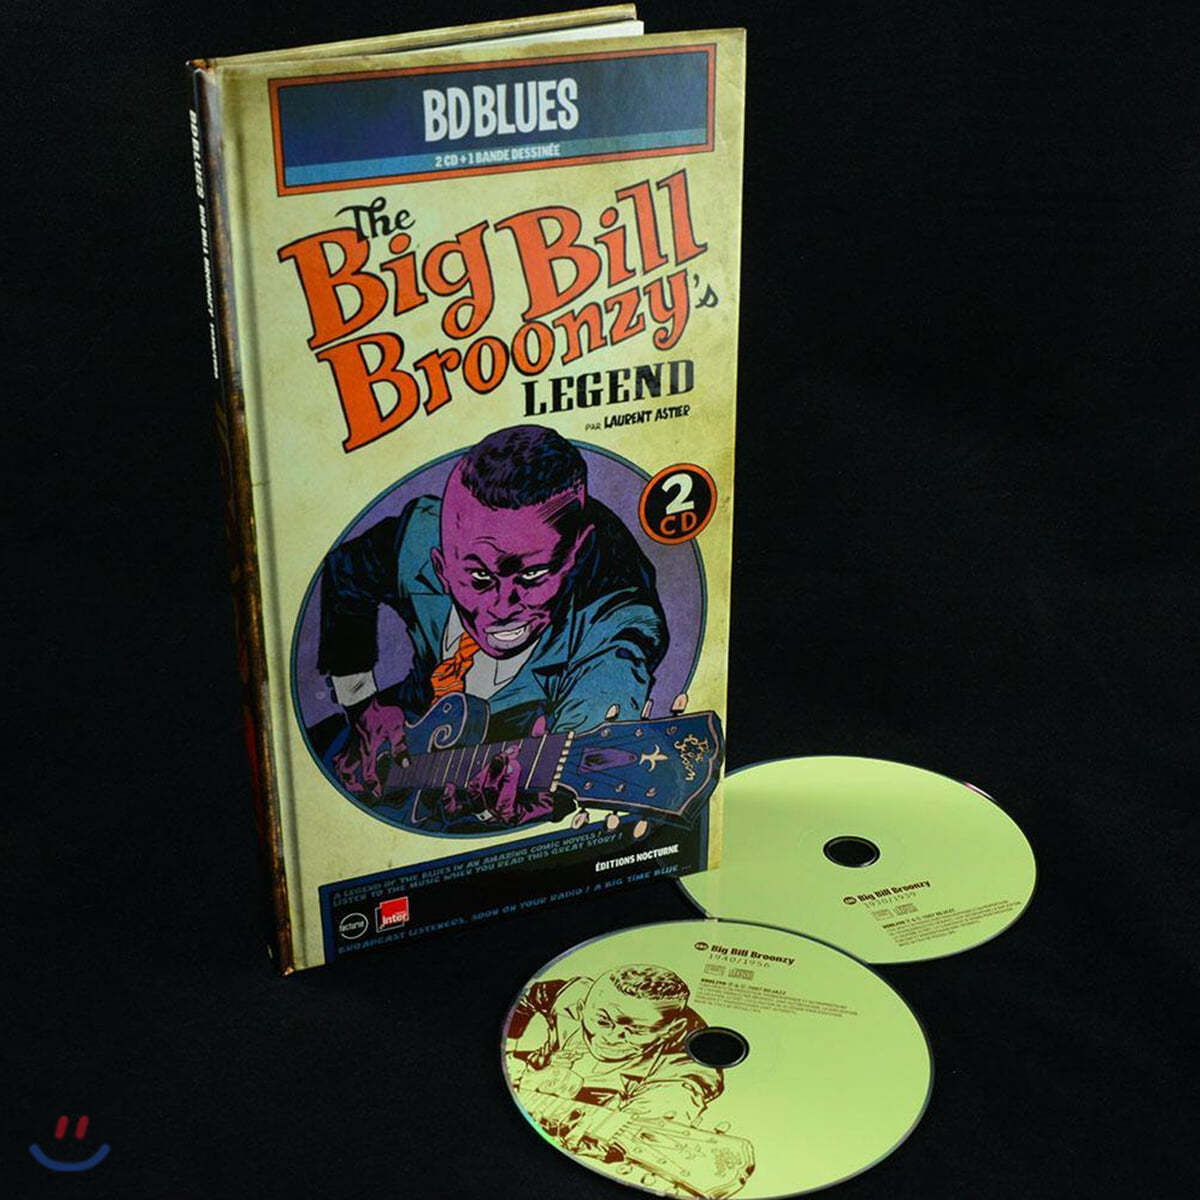 Big bill broonzy (빅 빌 브룬지) - Big Bill Broonzy's Legend